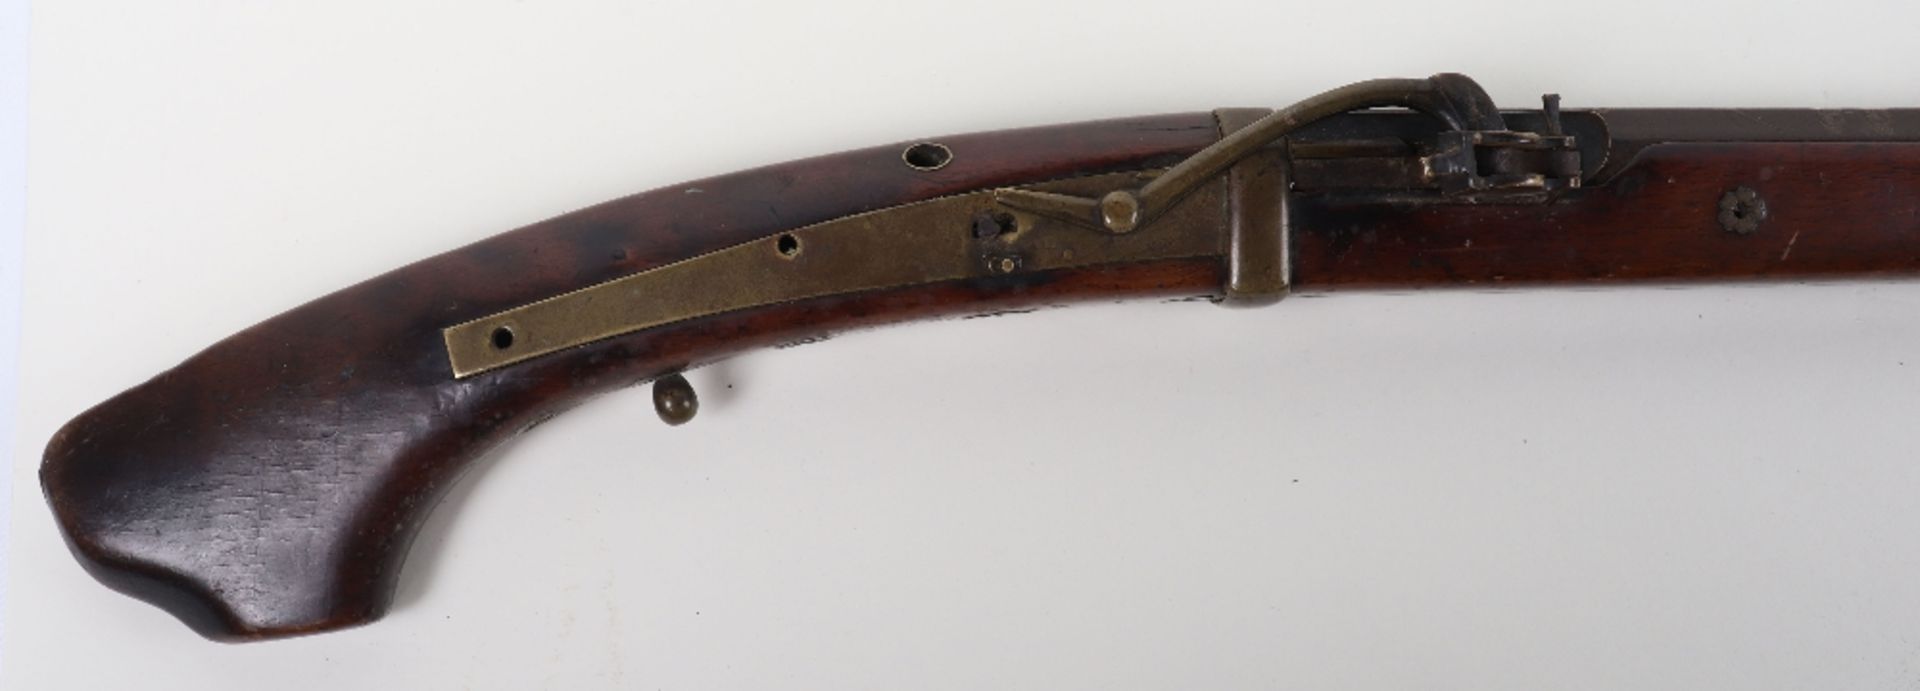 Japanese Matchlock Gun Tanegashima, 19th Century or Earlier - Image 2 of 13